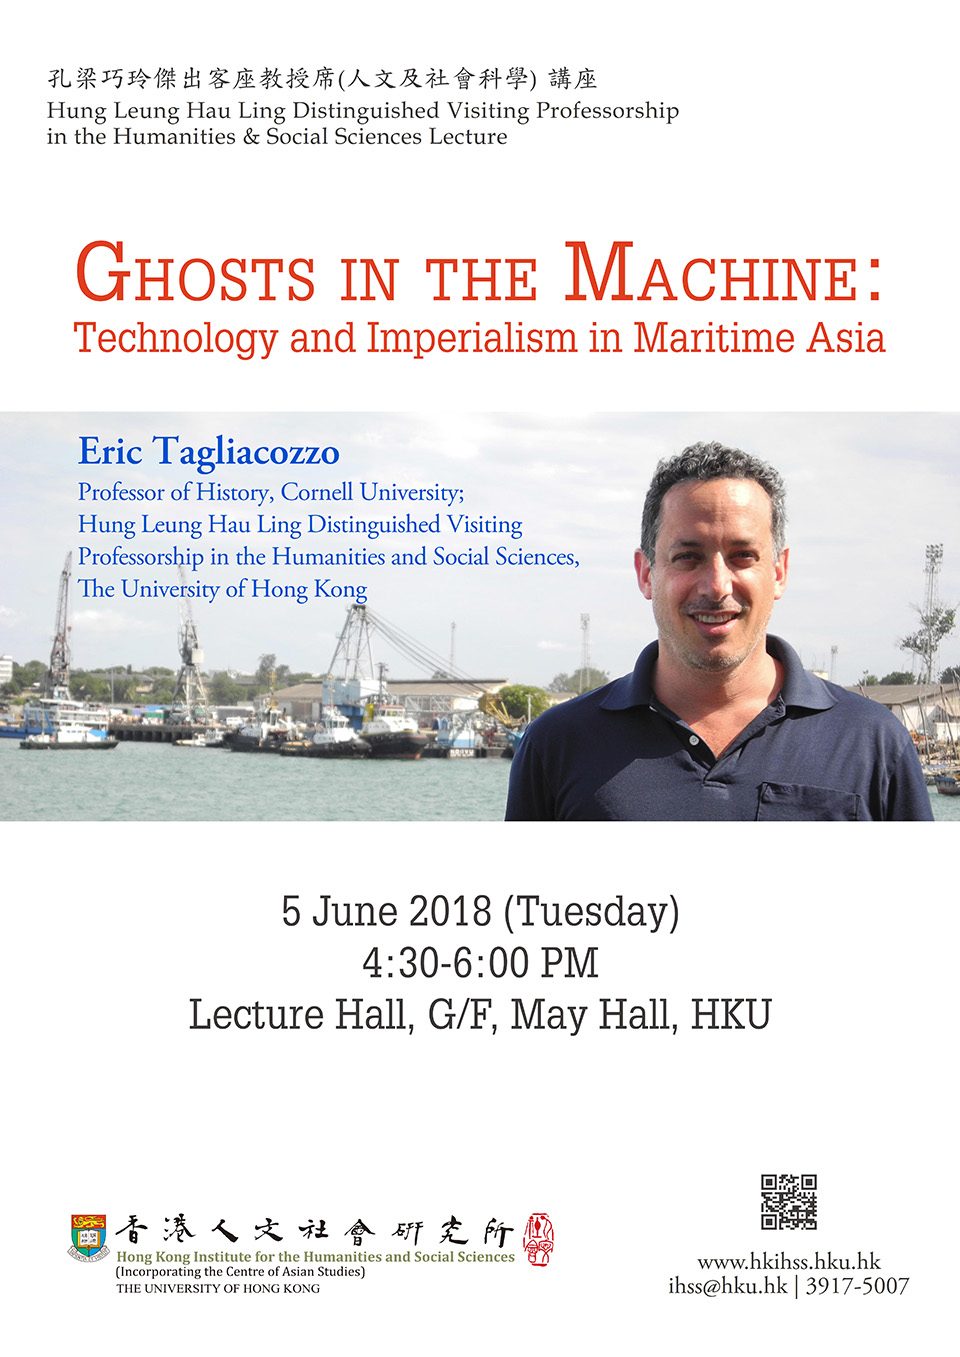 孔梁巧玲傑出客座教授席 (人文及社會科學)講座 Hung Leung Hau Ling Distinguished Visiting Professorship in the Humanities and Social Sciences Lecture on “Ghosts in the Machine: Technology and Imperialism in Maritime Asia” by Professor Eric Tagliacozzo (June 5, 2018)